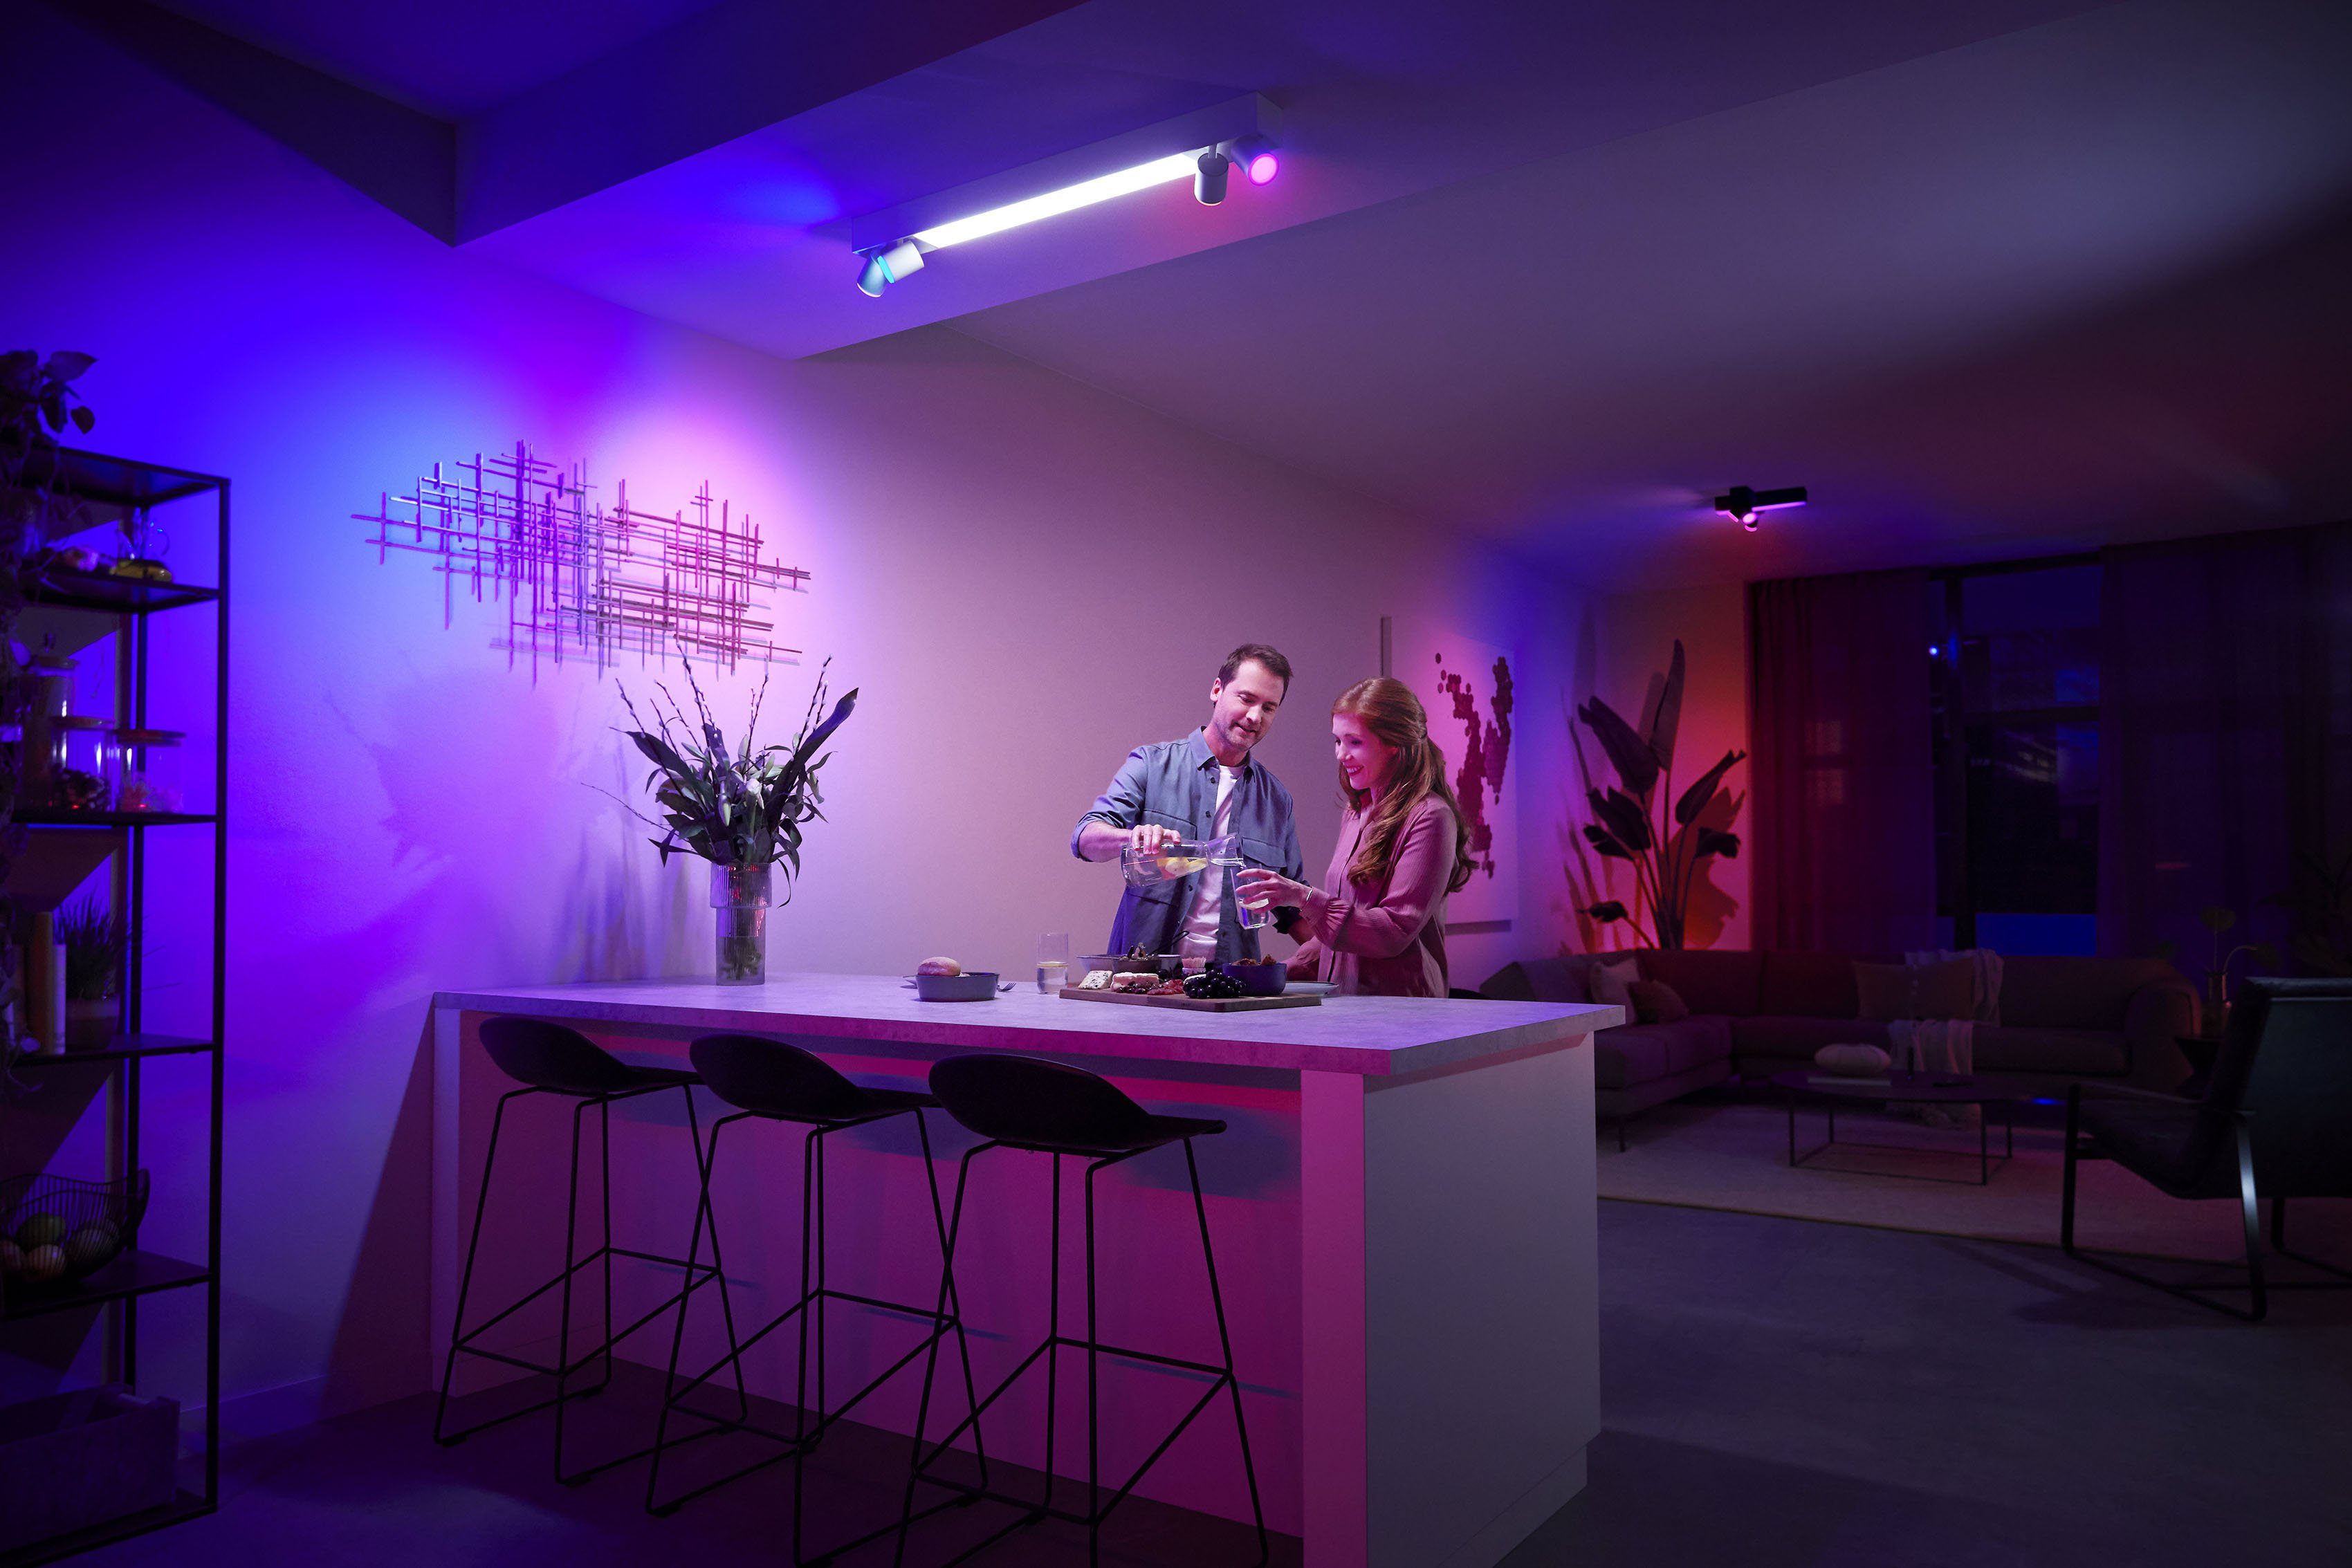 Philips LED Lampen Farbwechsler, App, der Hue Centris, Individ. Deckenspot anpassbar Lampeneinstellungen Hue LED wechselbar, mit einzeln